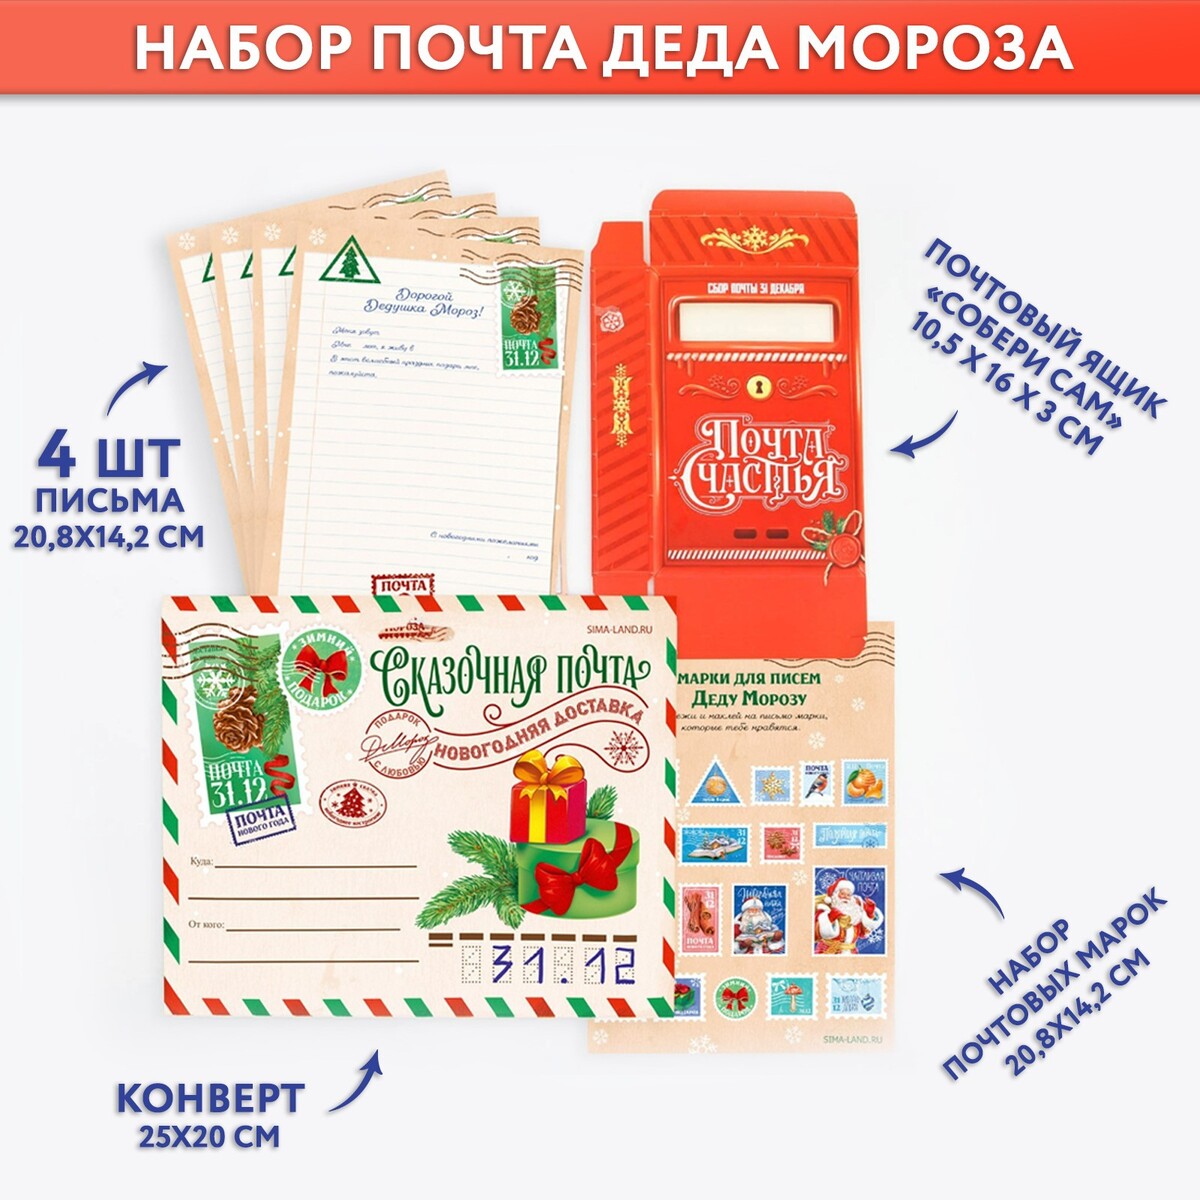 Набор почта деда мороза: почтовый ящик, письма (4шт.), марки письма